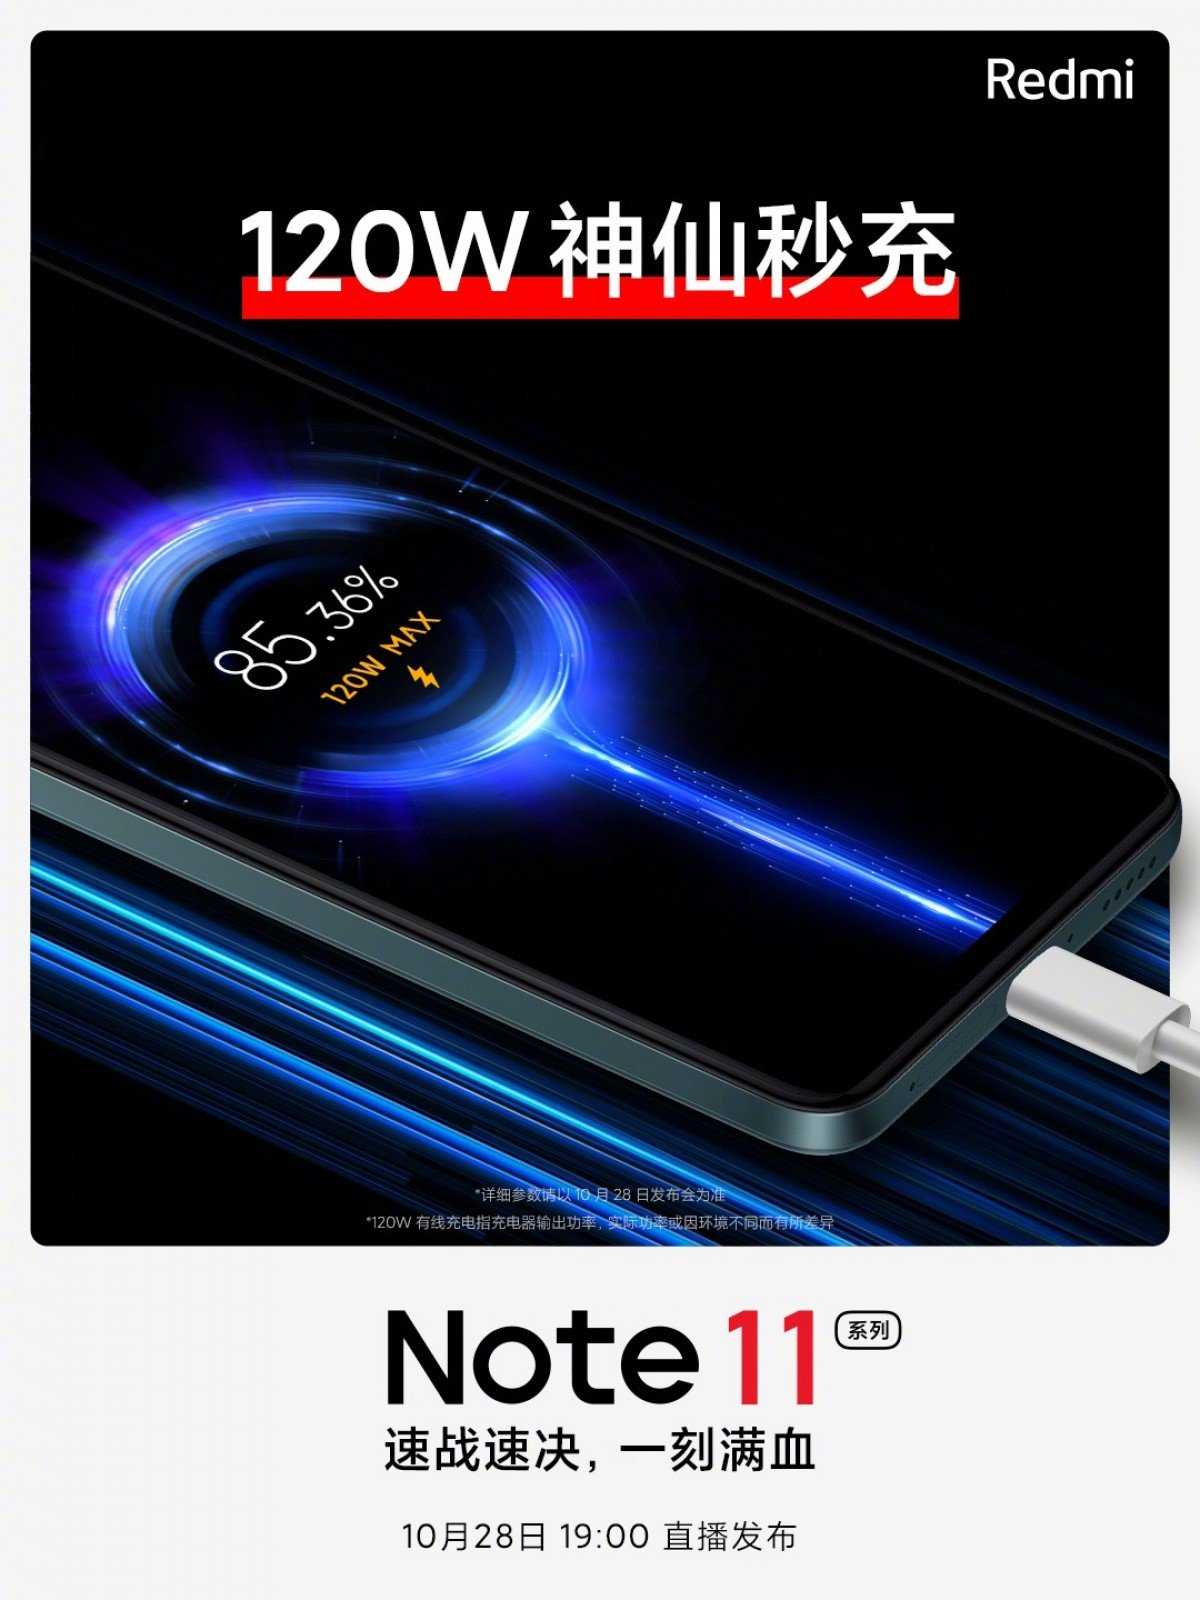 Redmi Note 11 Teaser 120w de carga